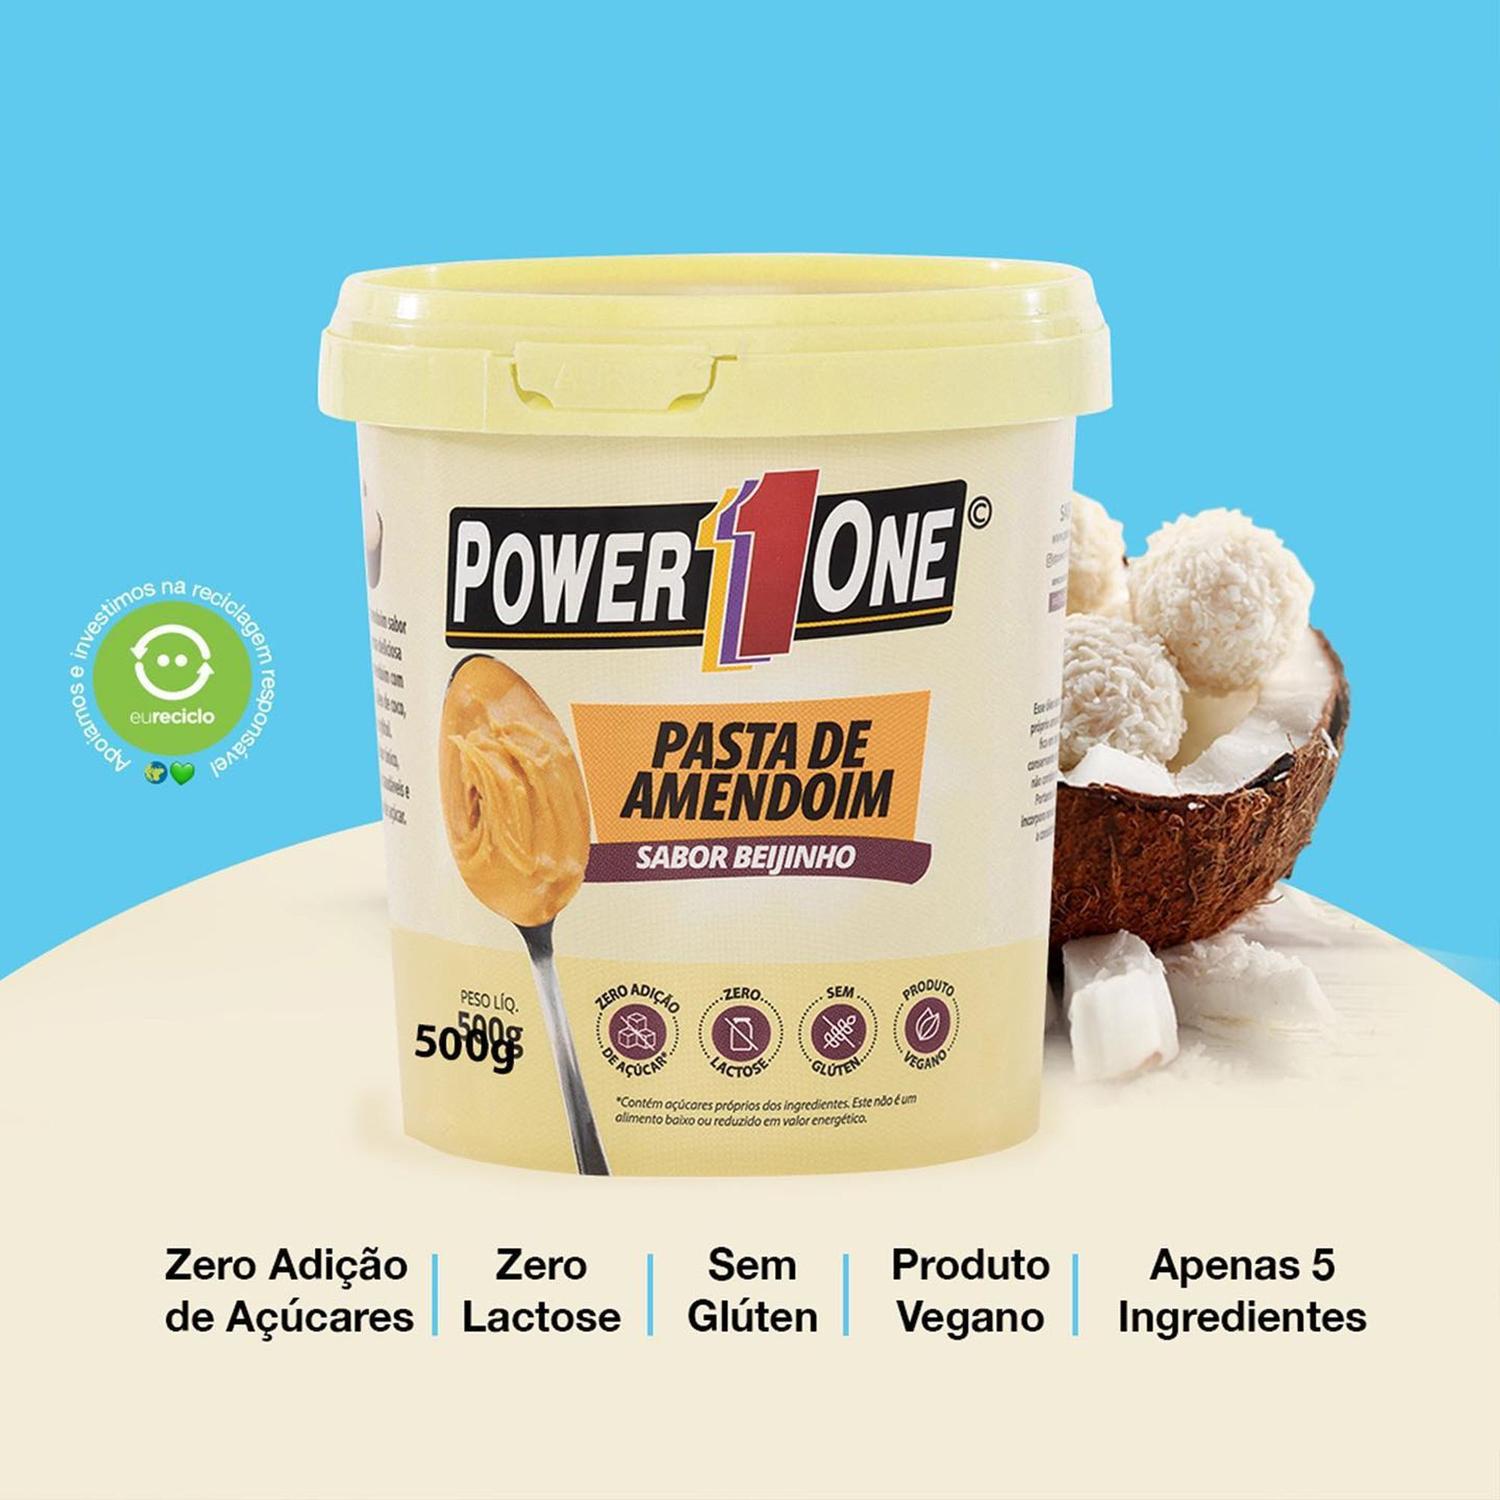 Power one pasta de amendoim sabor beijinho 500g - Power1One - Massa  Muscular - Magazine Luiza